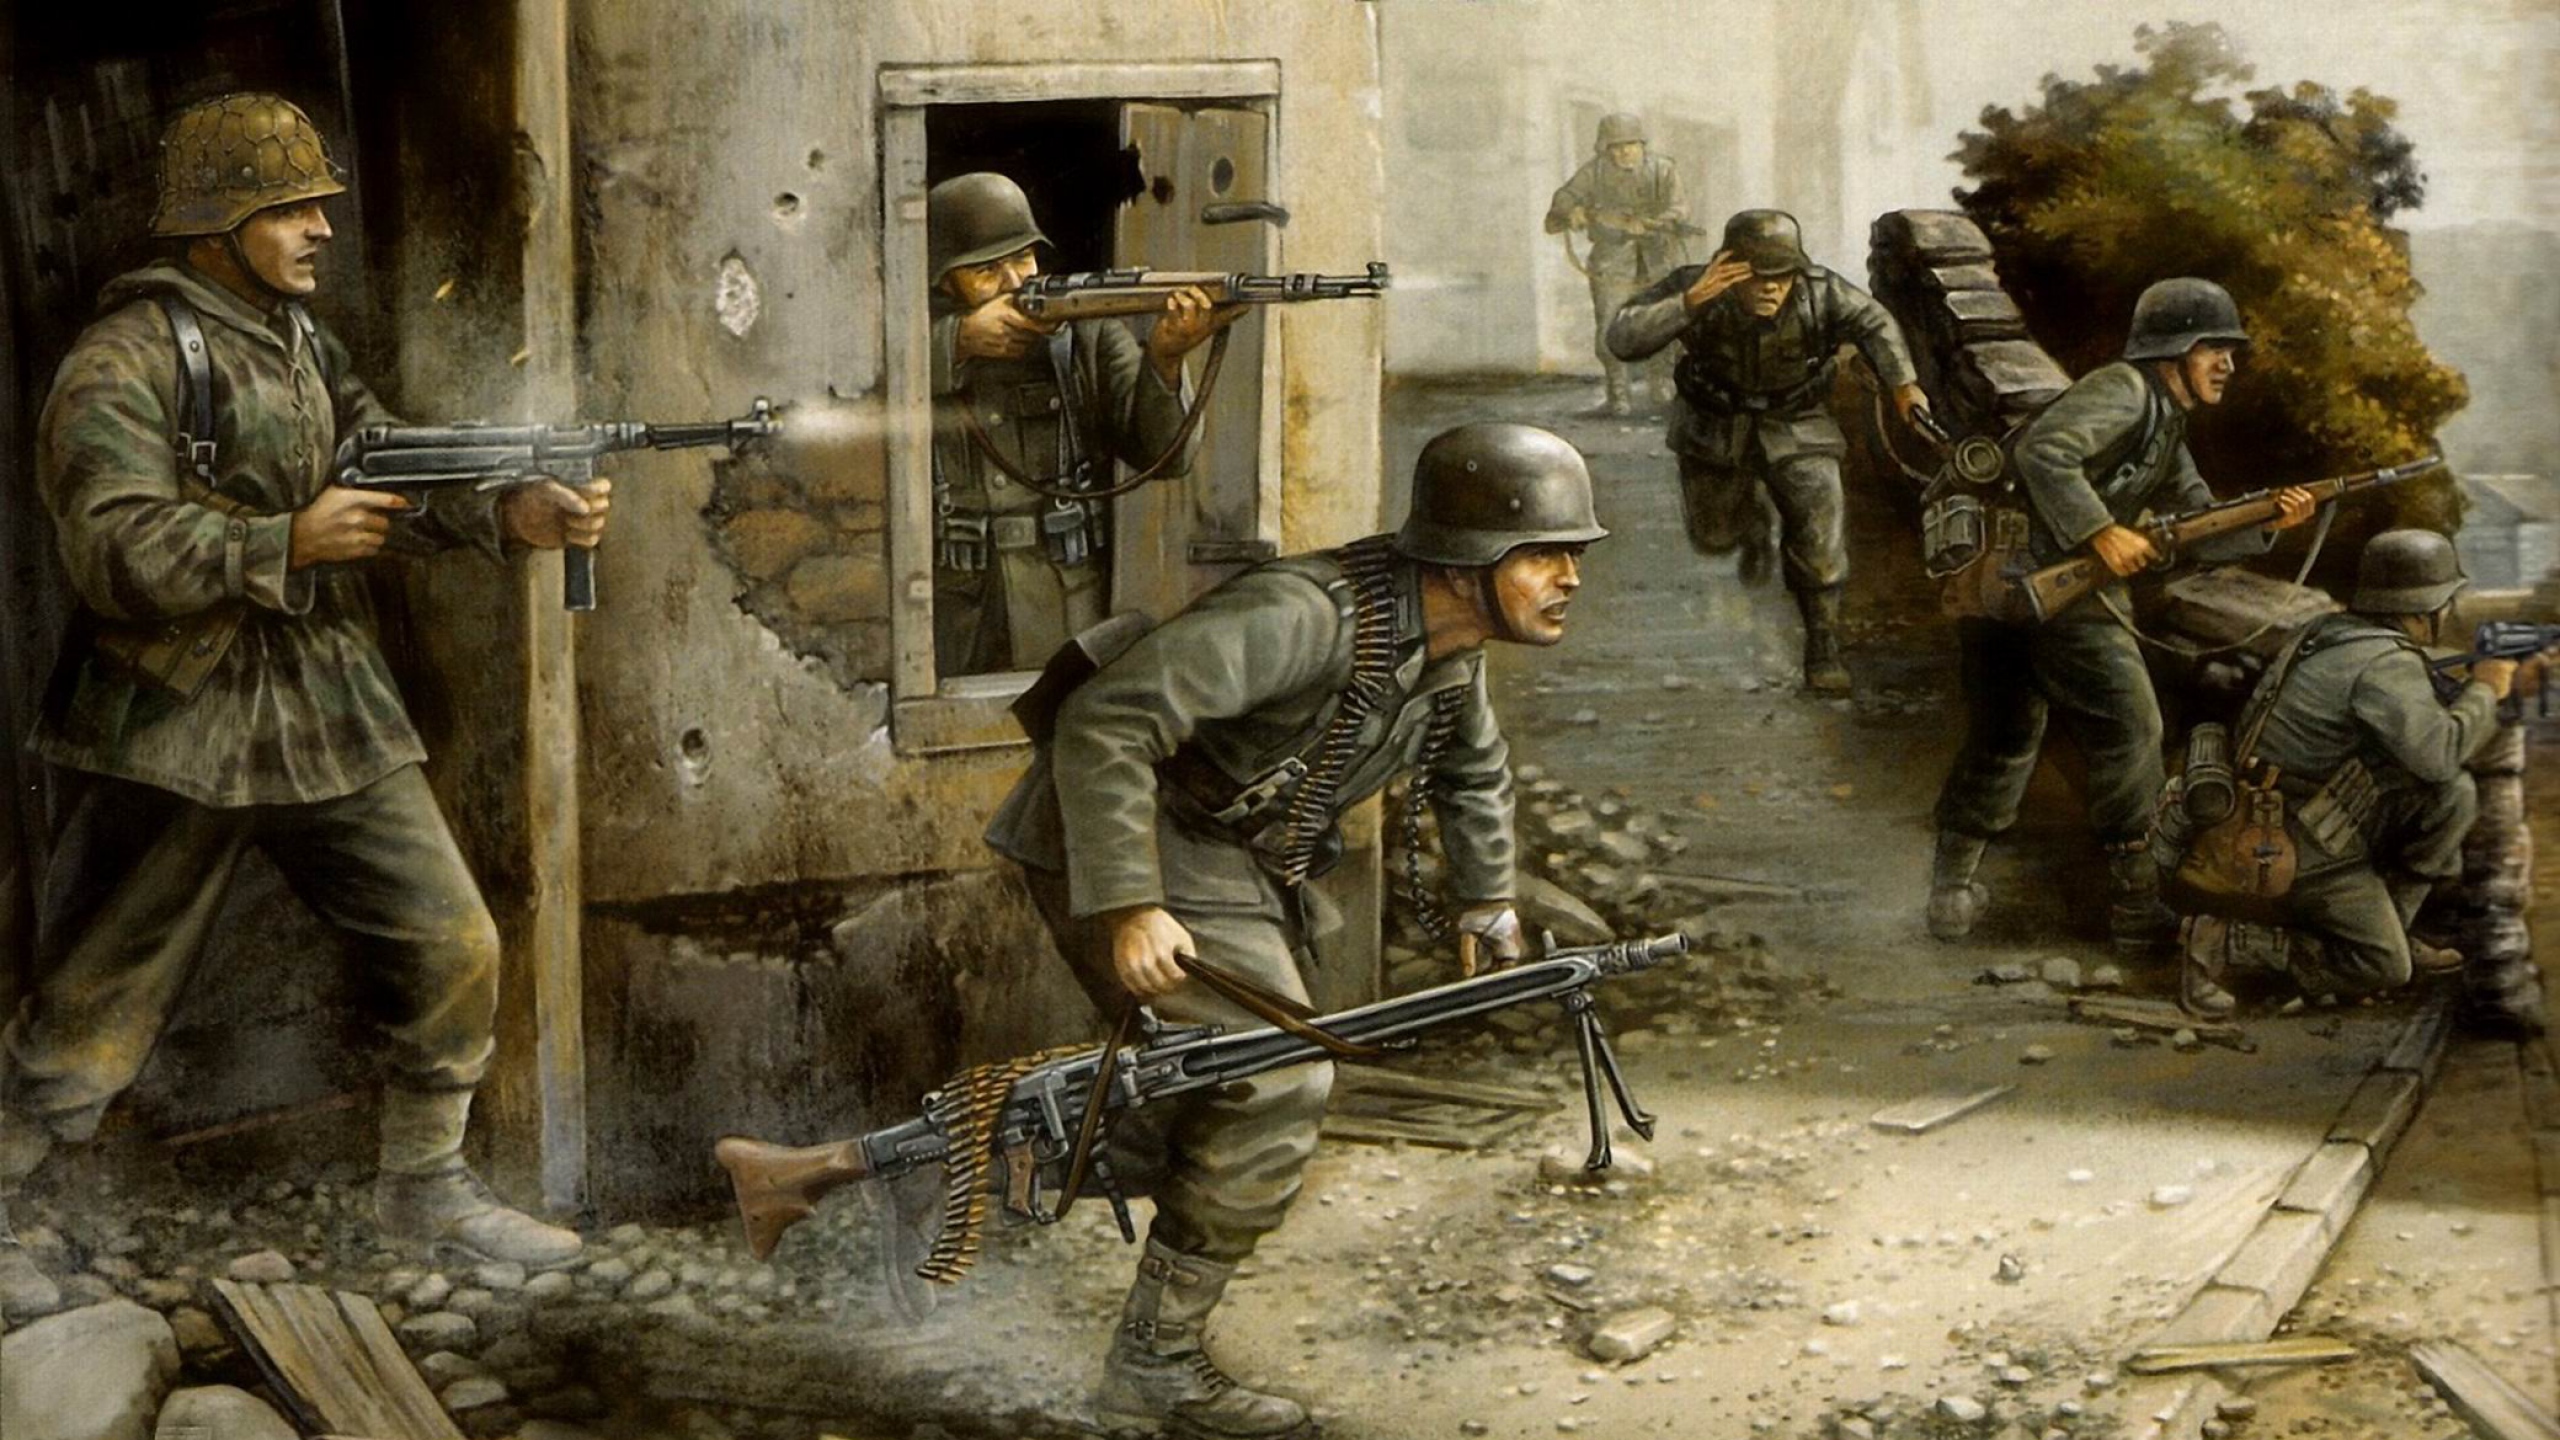 Wehrmacht Wallpaper